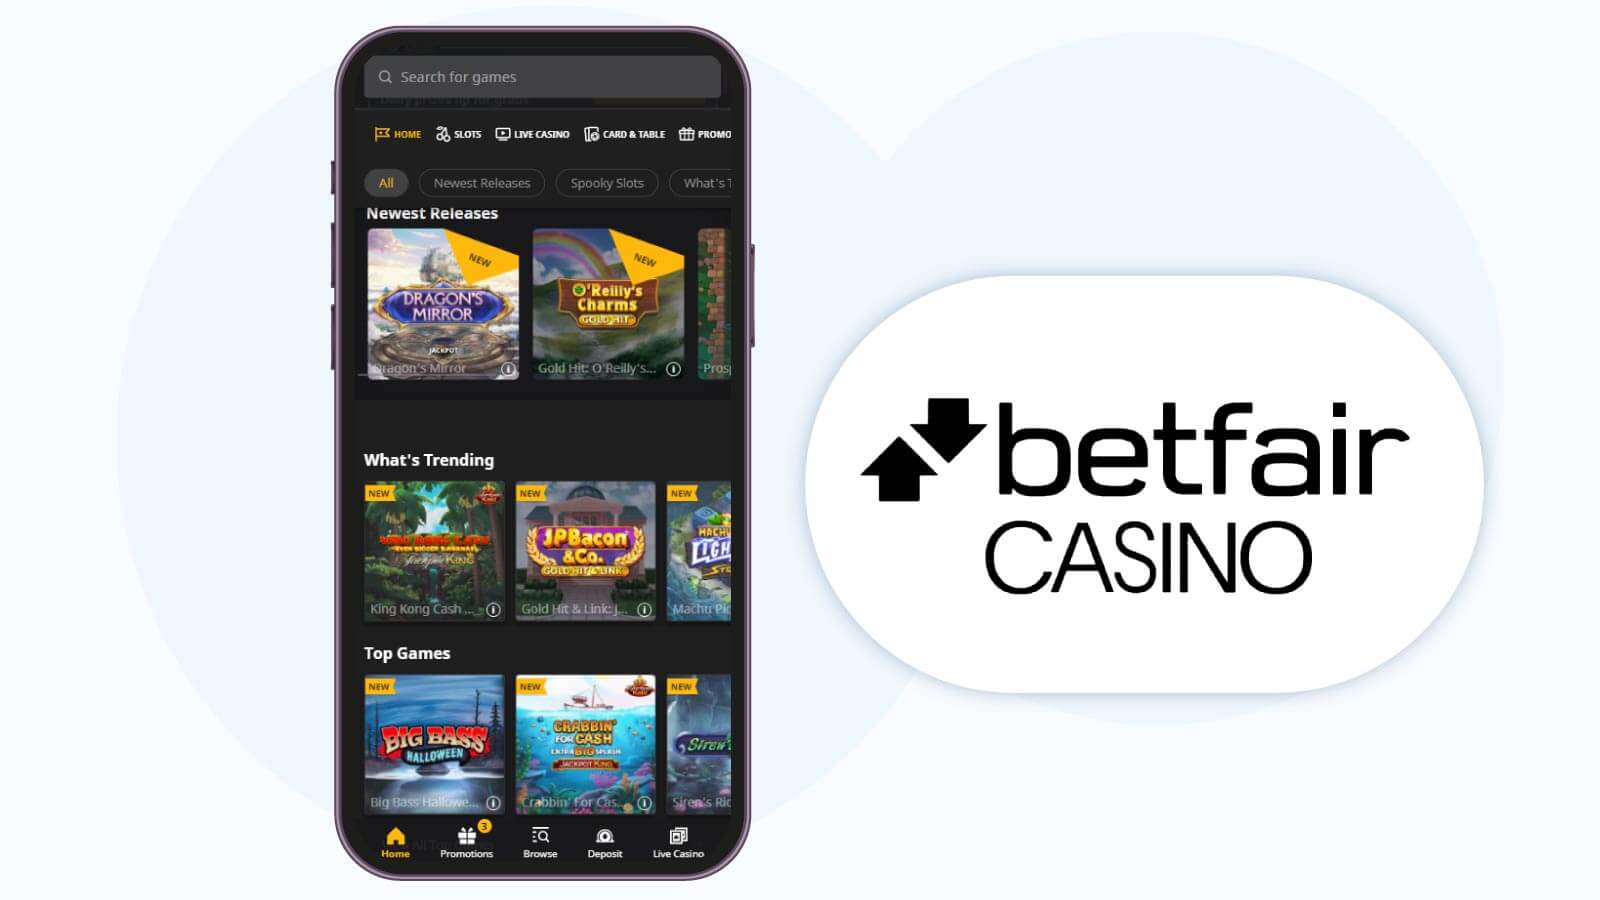 Betfair Casino – Best for Mobile Casino App